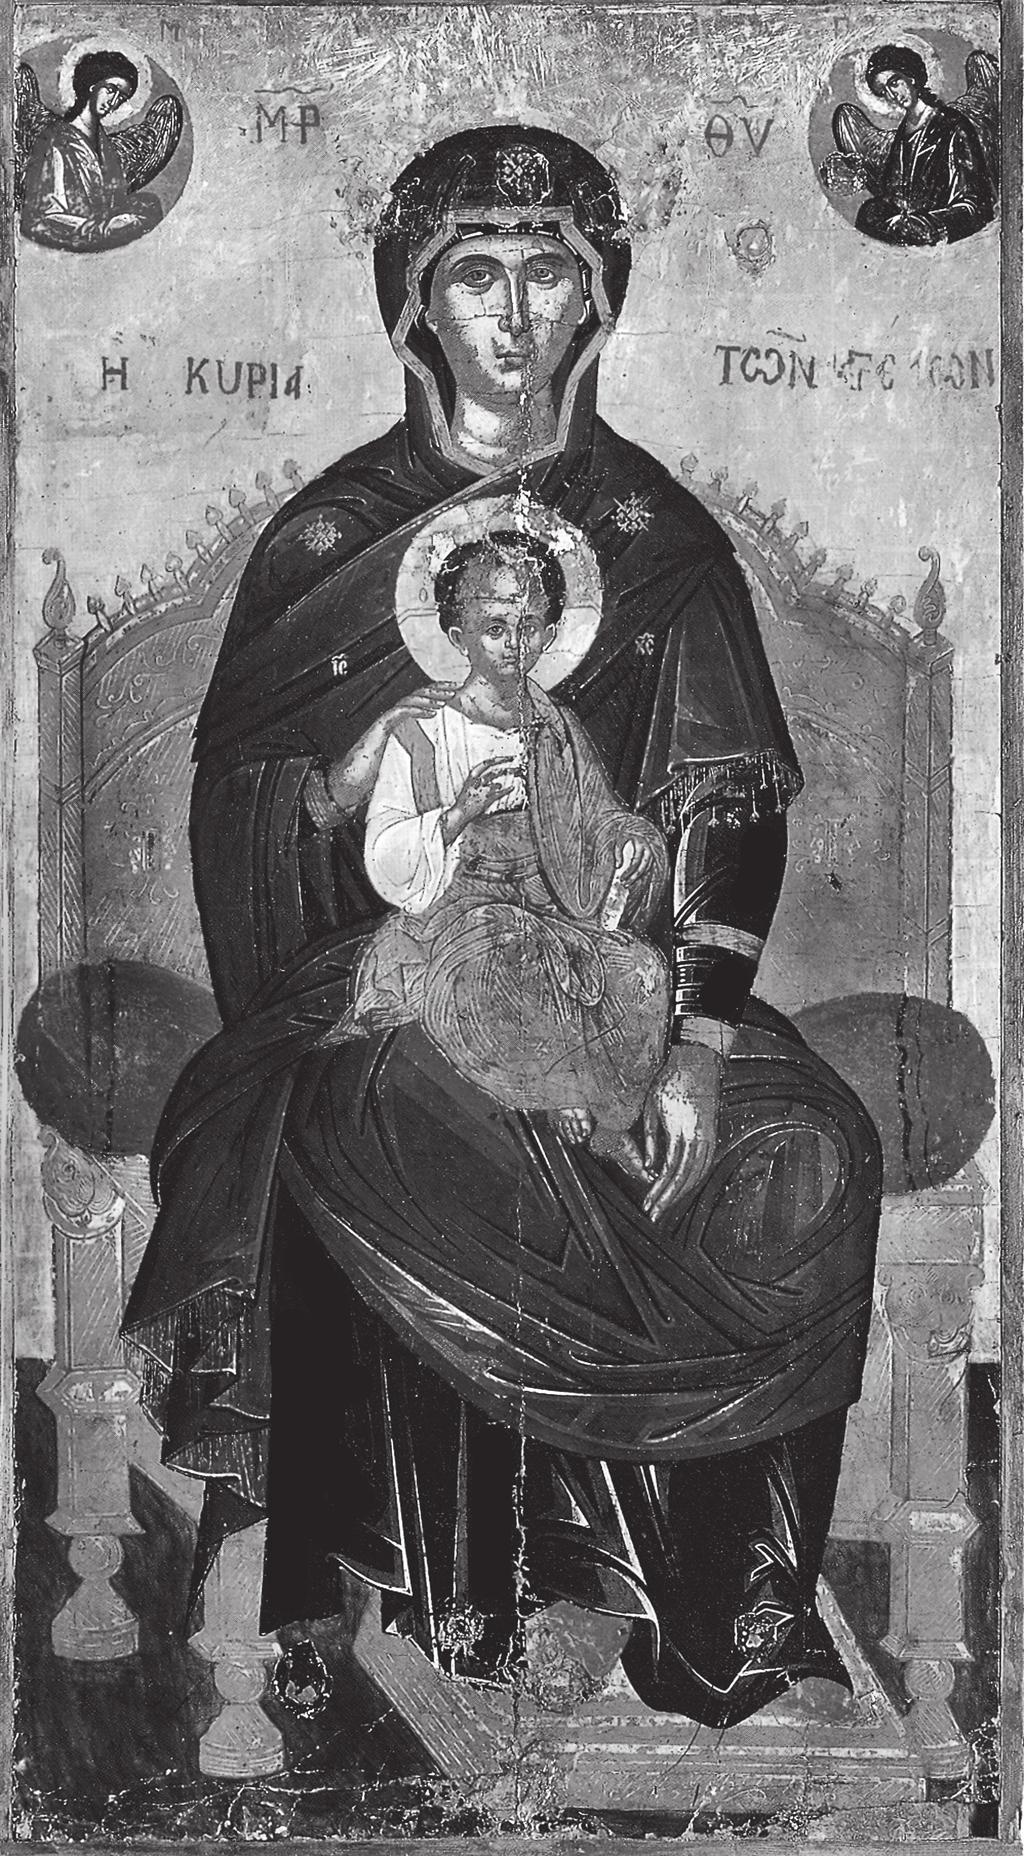 ΜΑΡΙΑ ΑΓΡΕΒΗ Εικ. 3. Αγία Πετρούπολη, Μουσείο Ερμιτάζ, Ἡ Κυρία των Αγγέλων. Εικόνα του κύκλου του ζωγράφου Α.